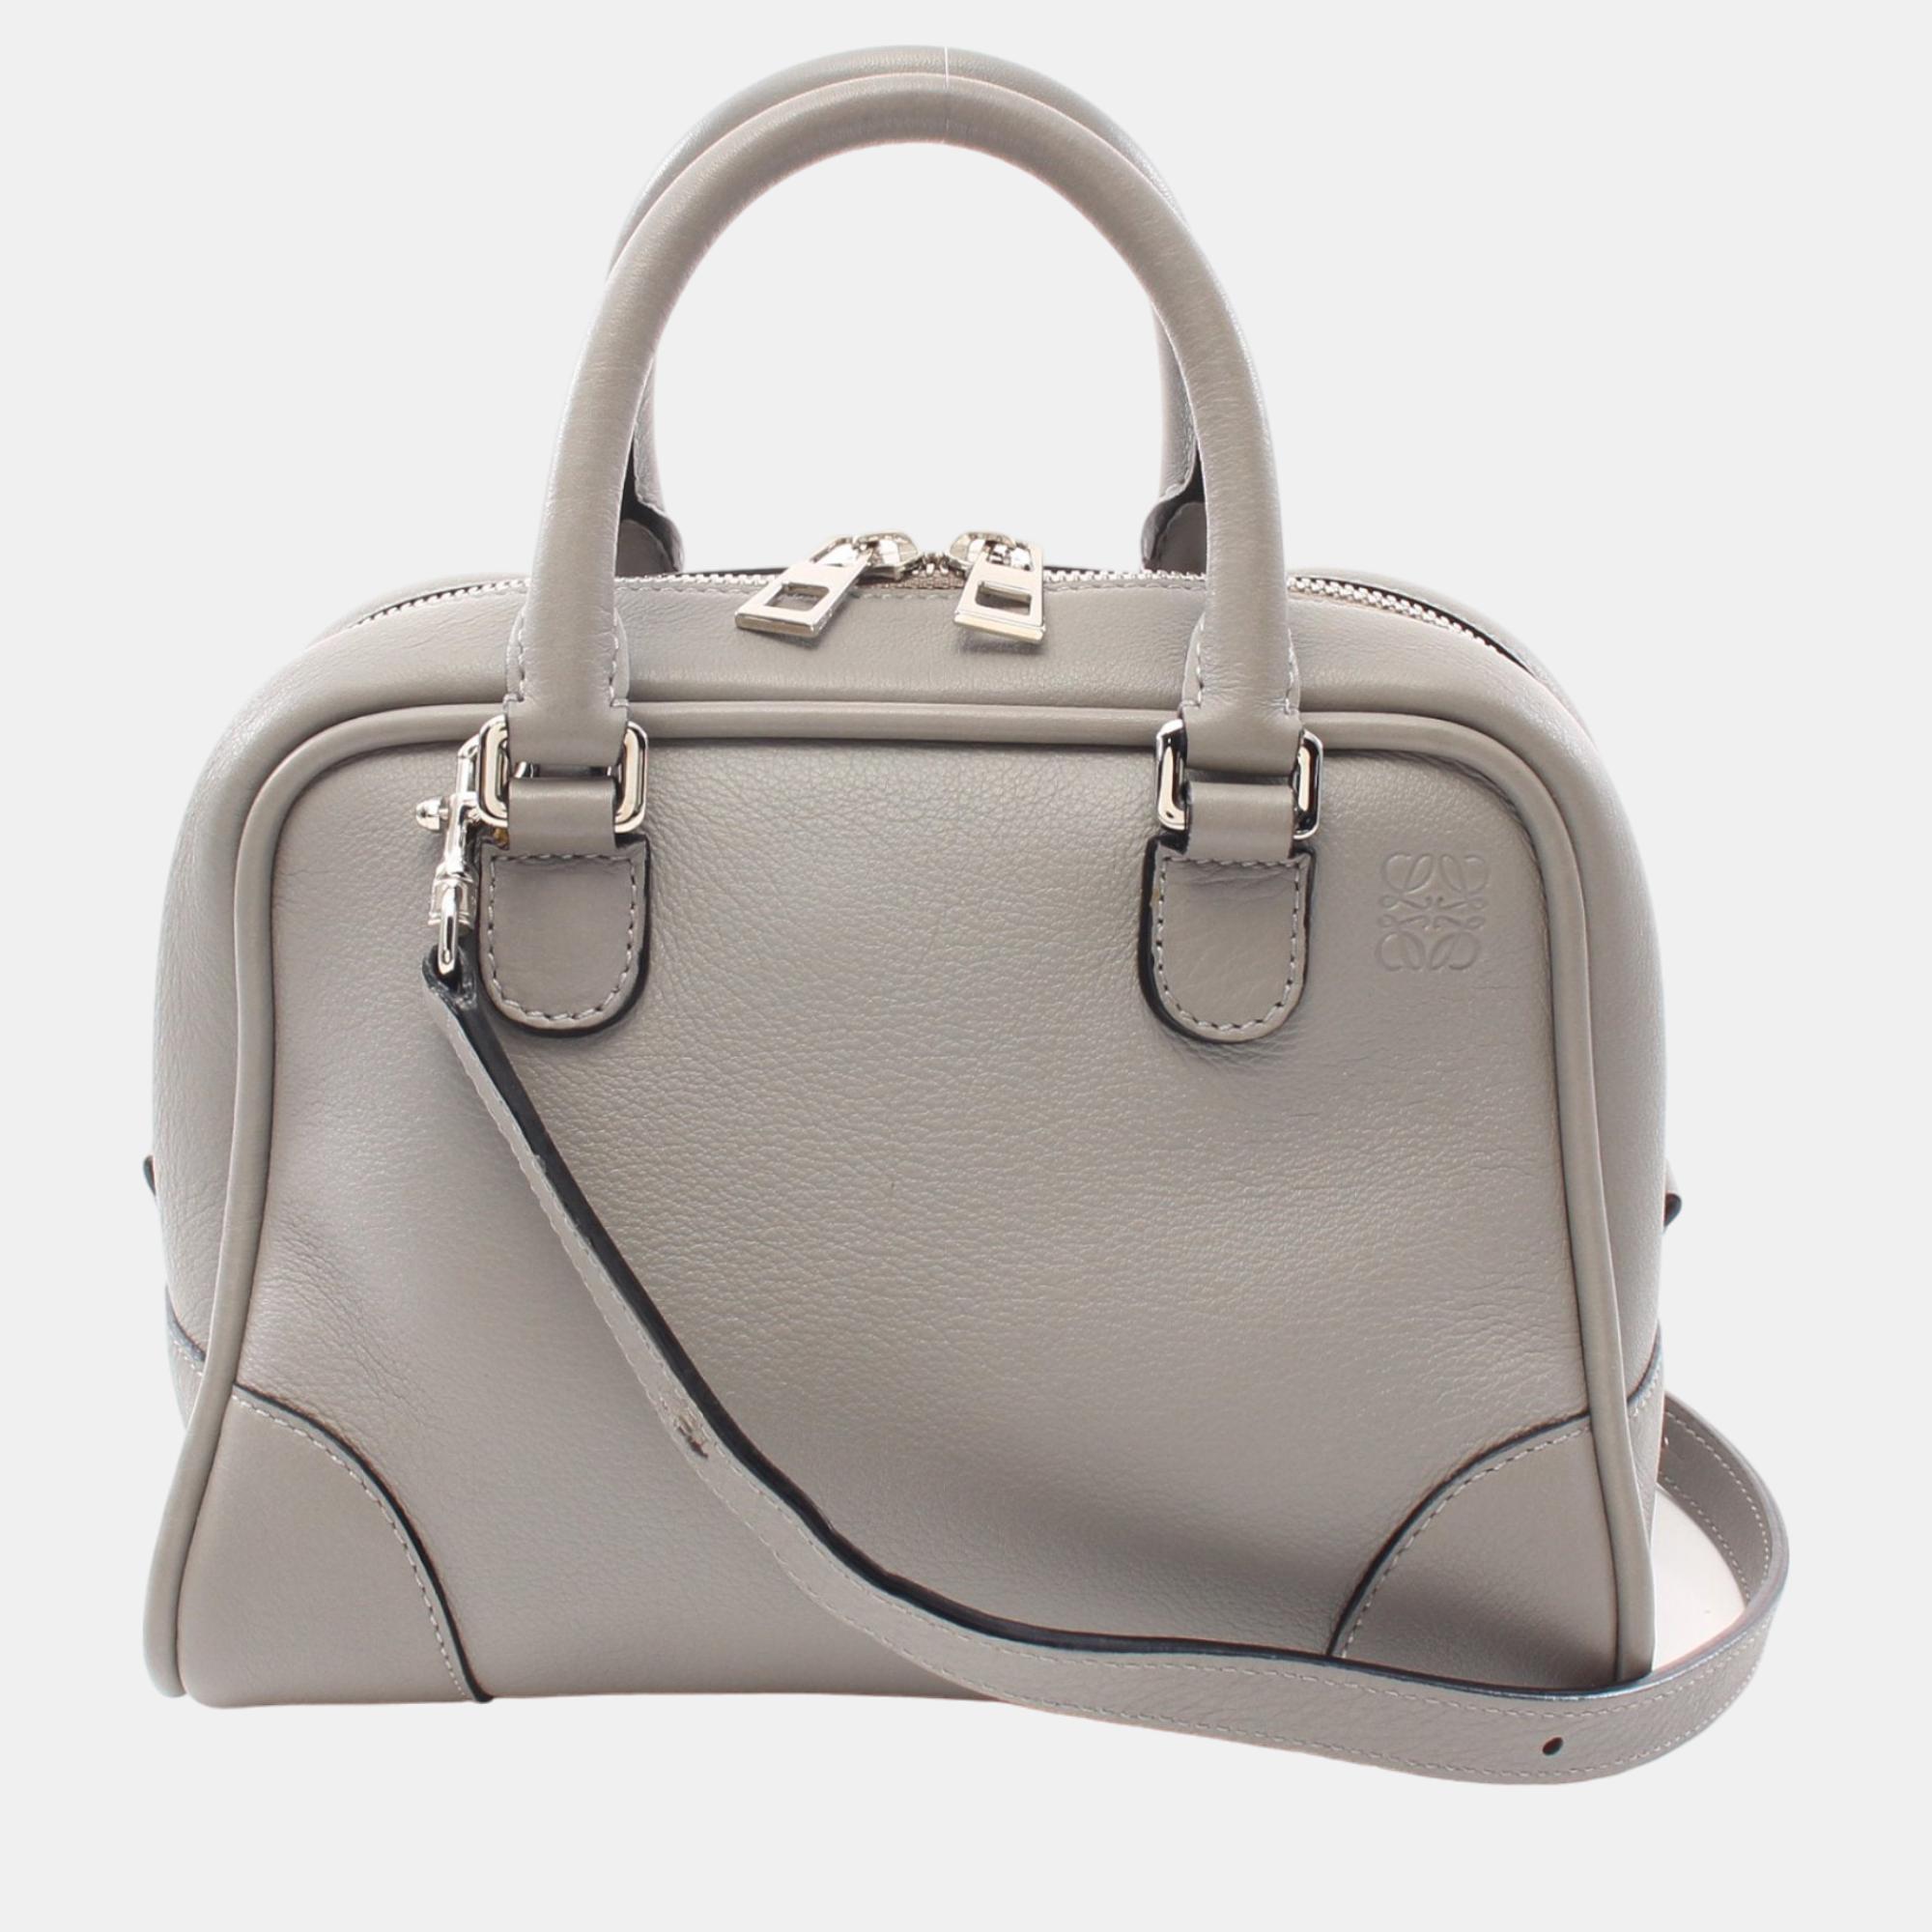 Loewe amazona75 handbag leather gray 2way